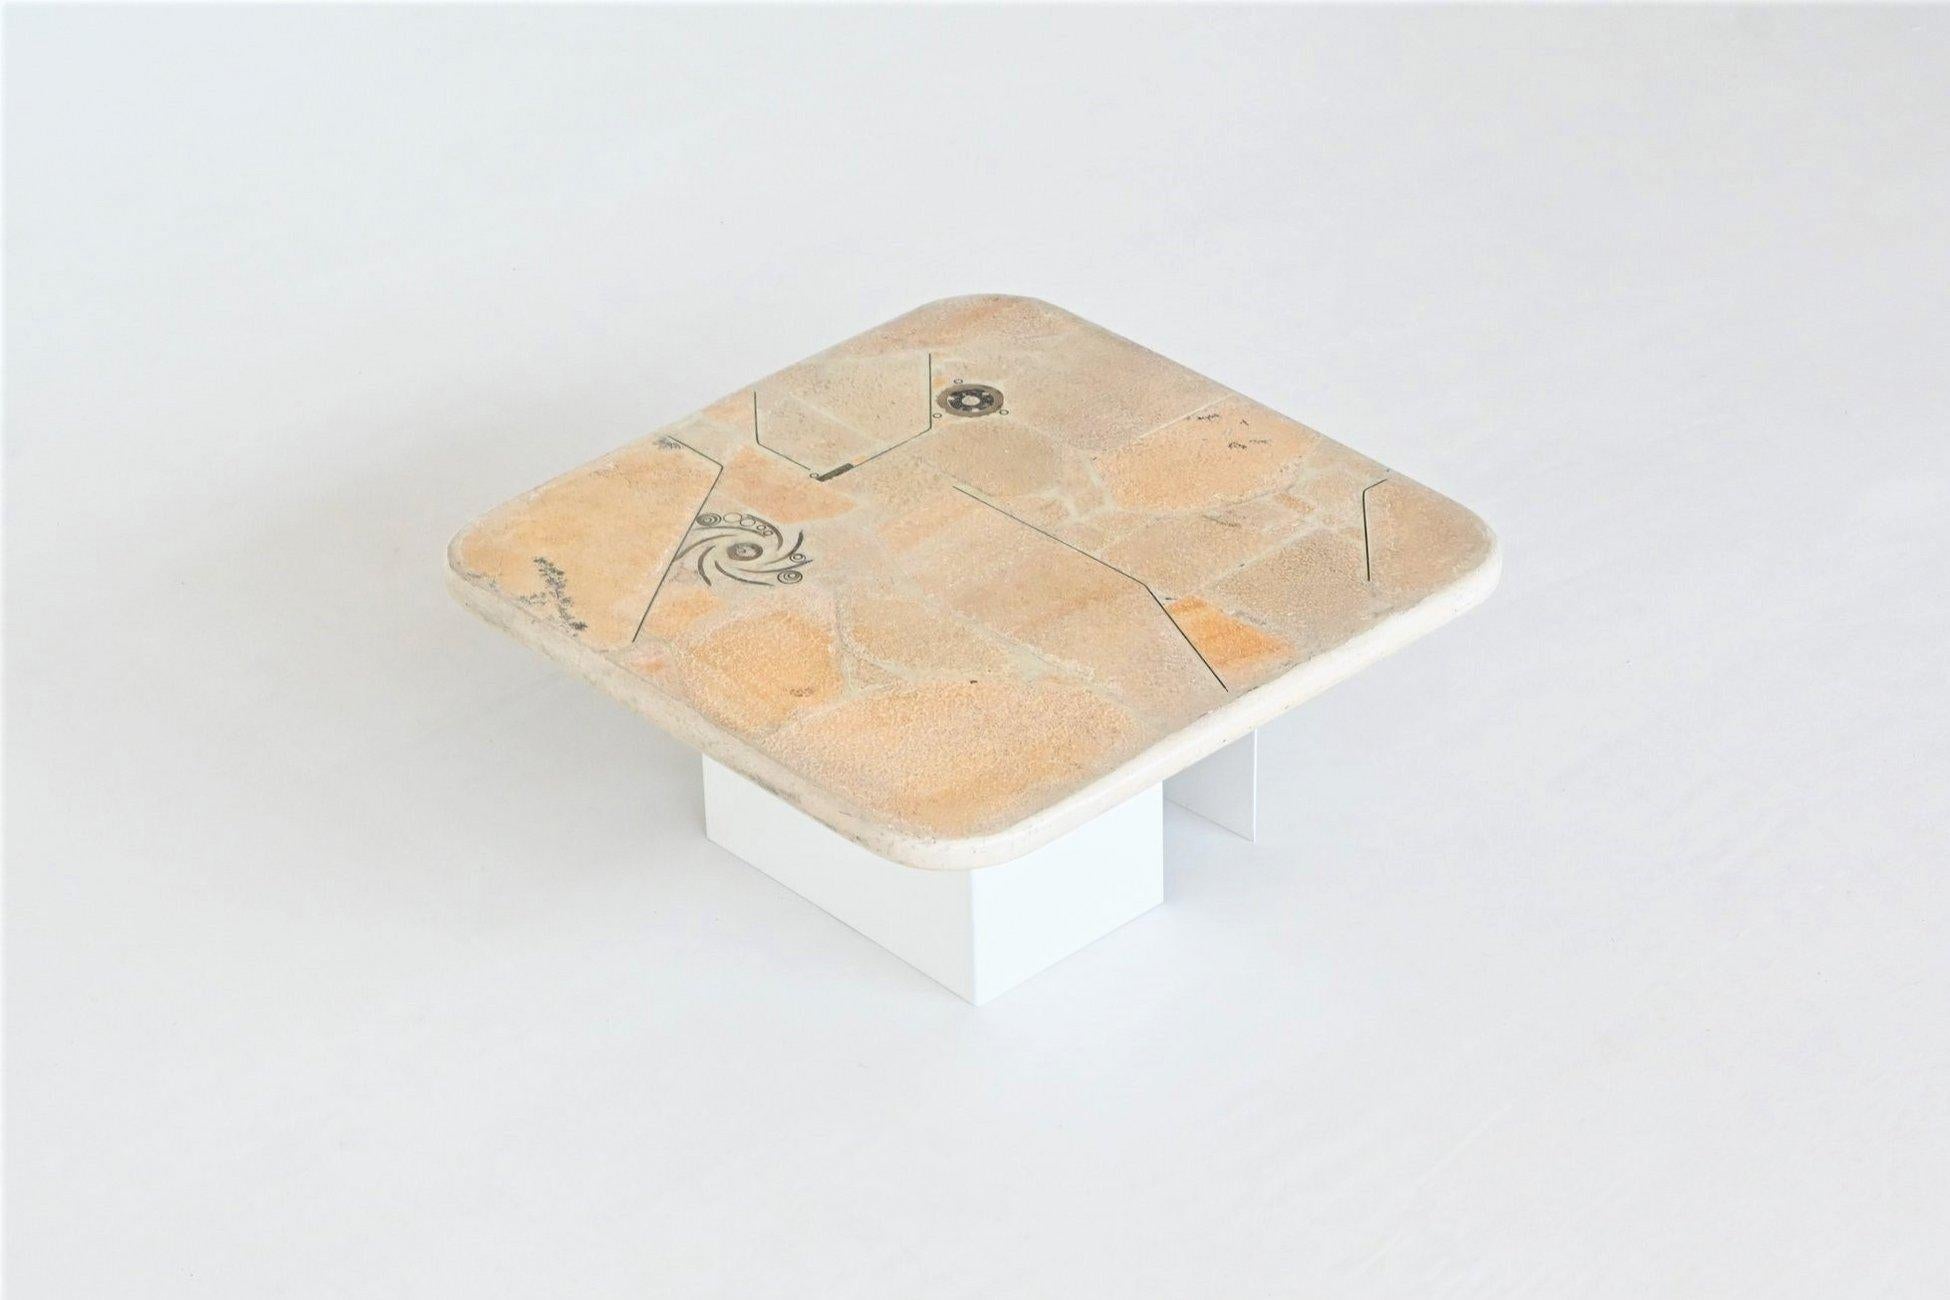 Schöner quadratischer Couchtisch, entworfen und hergestellt von Marcus Kingma, Niederlande 1992. Die schwere weiße Betonplatte ruht auf einem Sockel aus zwei weiß lackierten Metallsockeln, die in verschiedenen Positionen aufgestellt werden können.